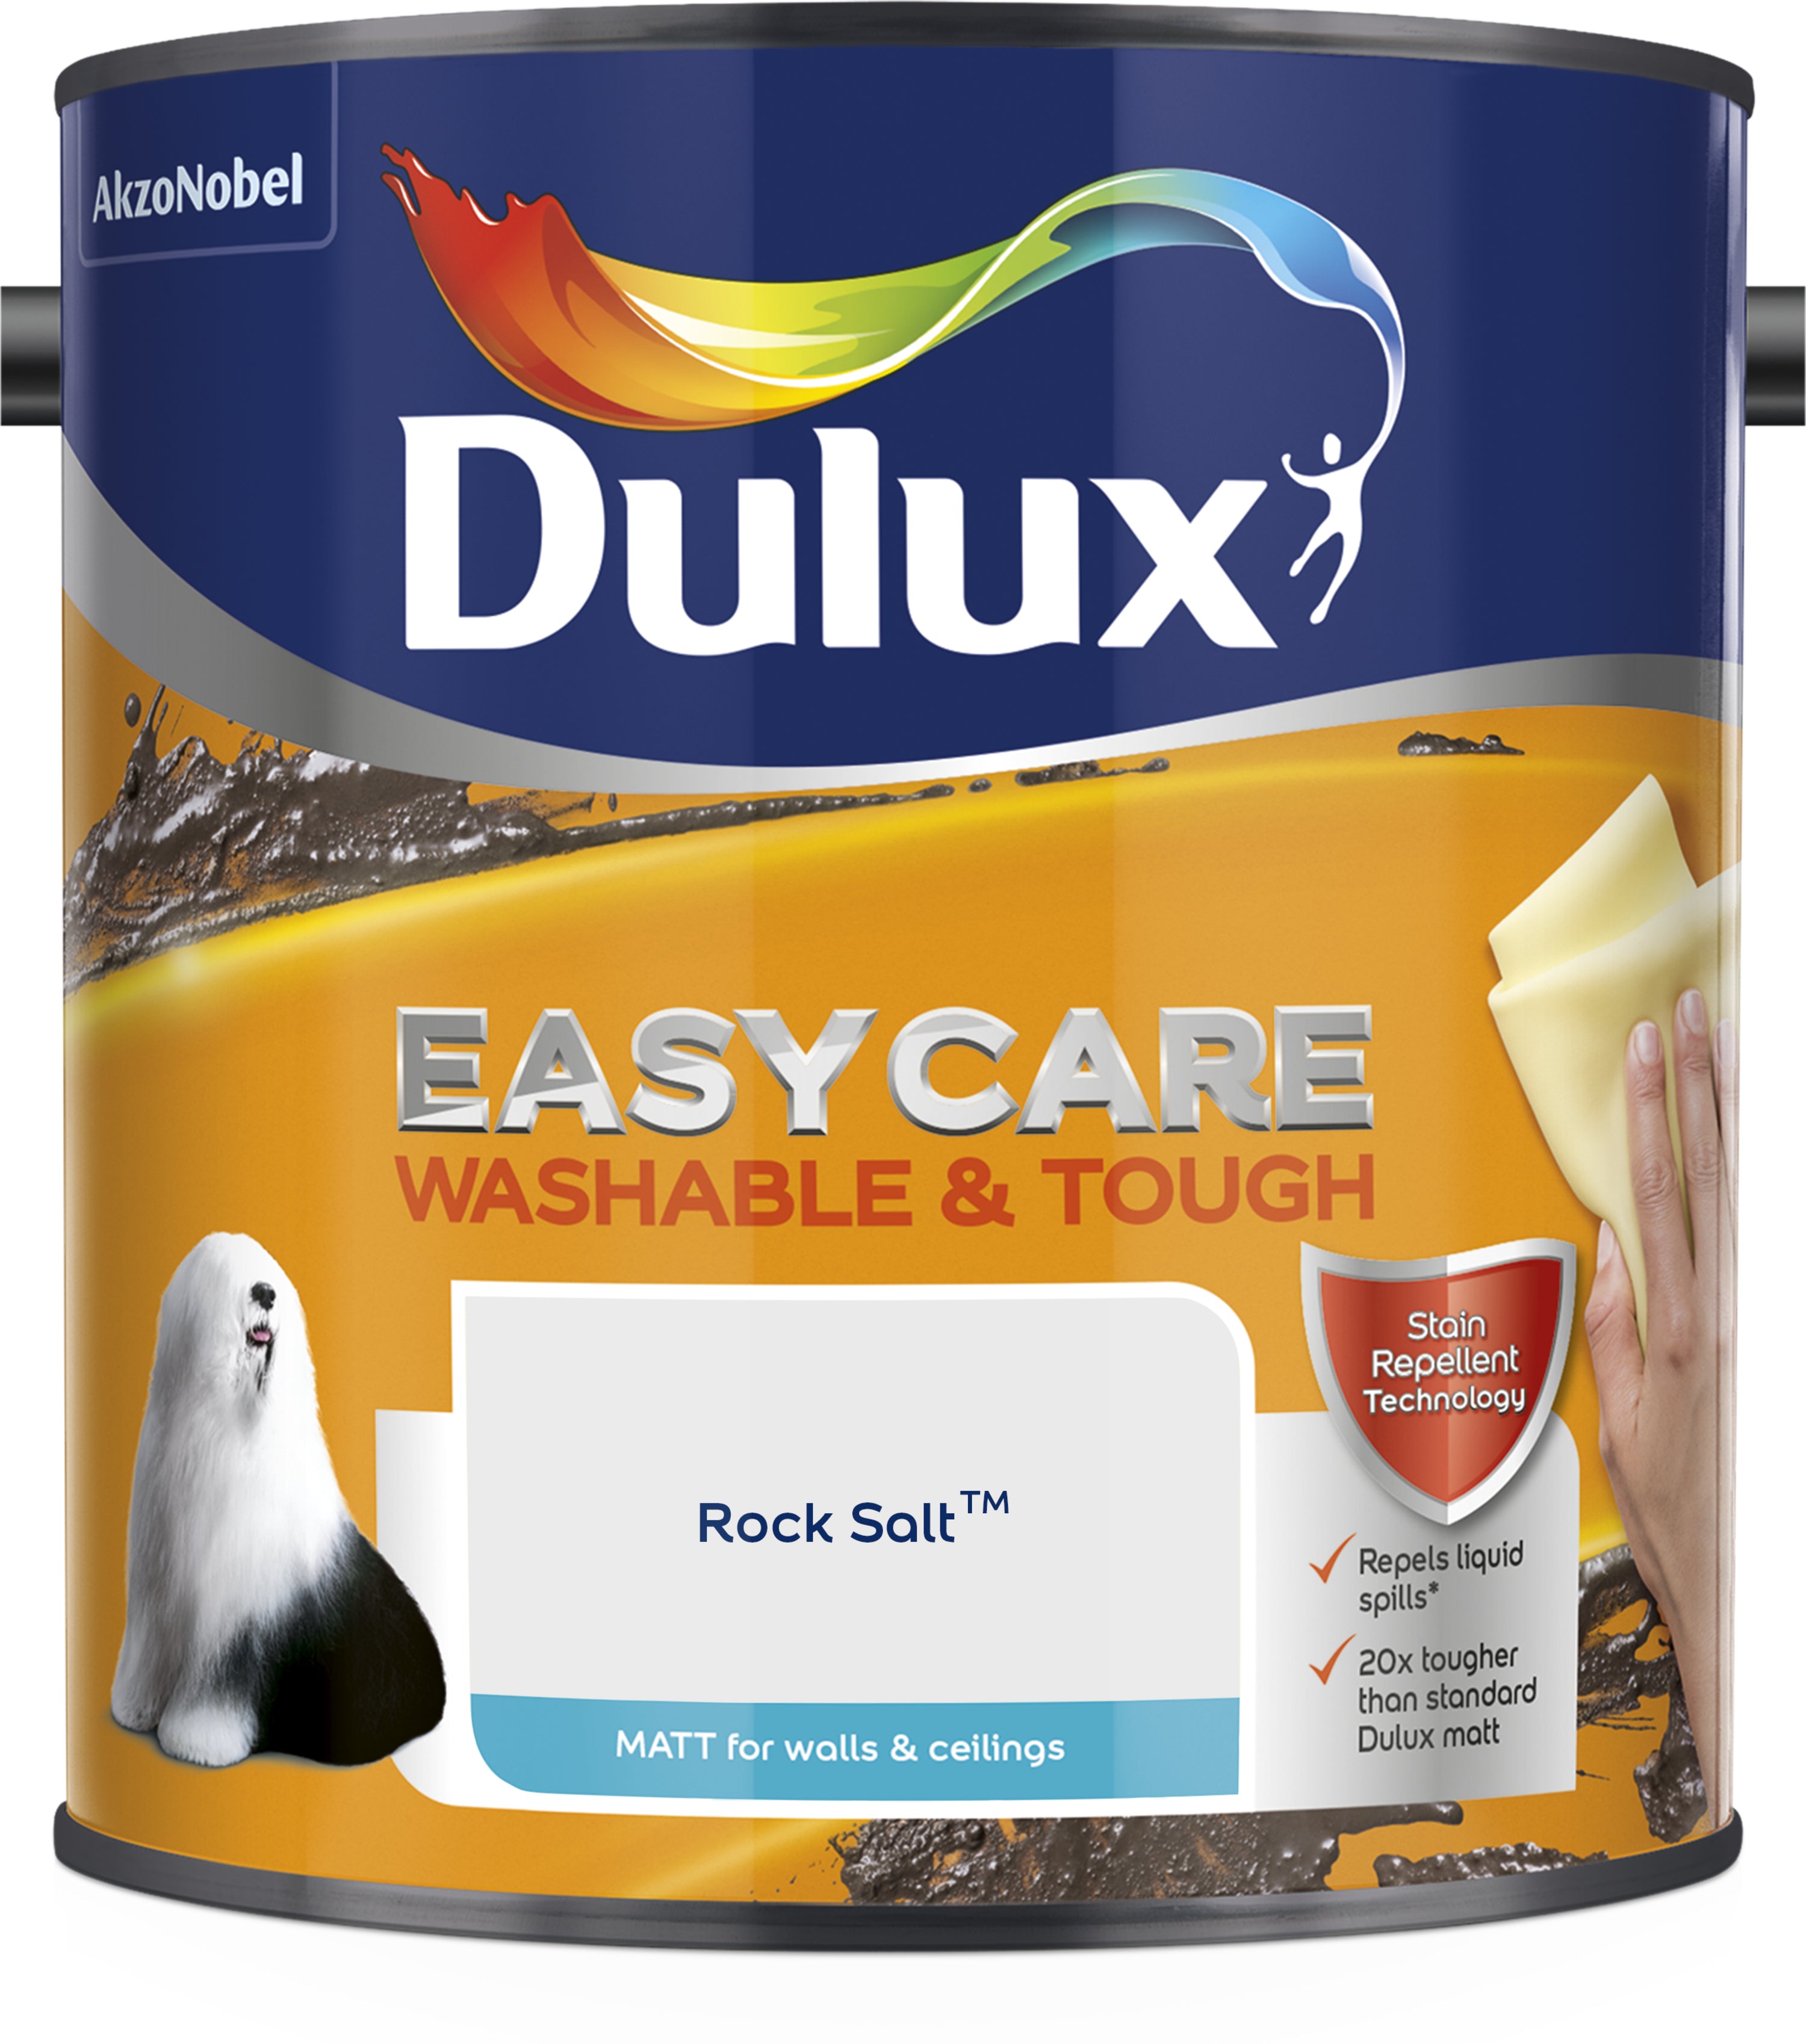 Dulux Easycare Washable & Tough Matt Rock Salt 2.5L